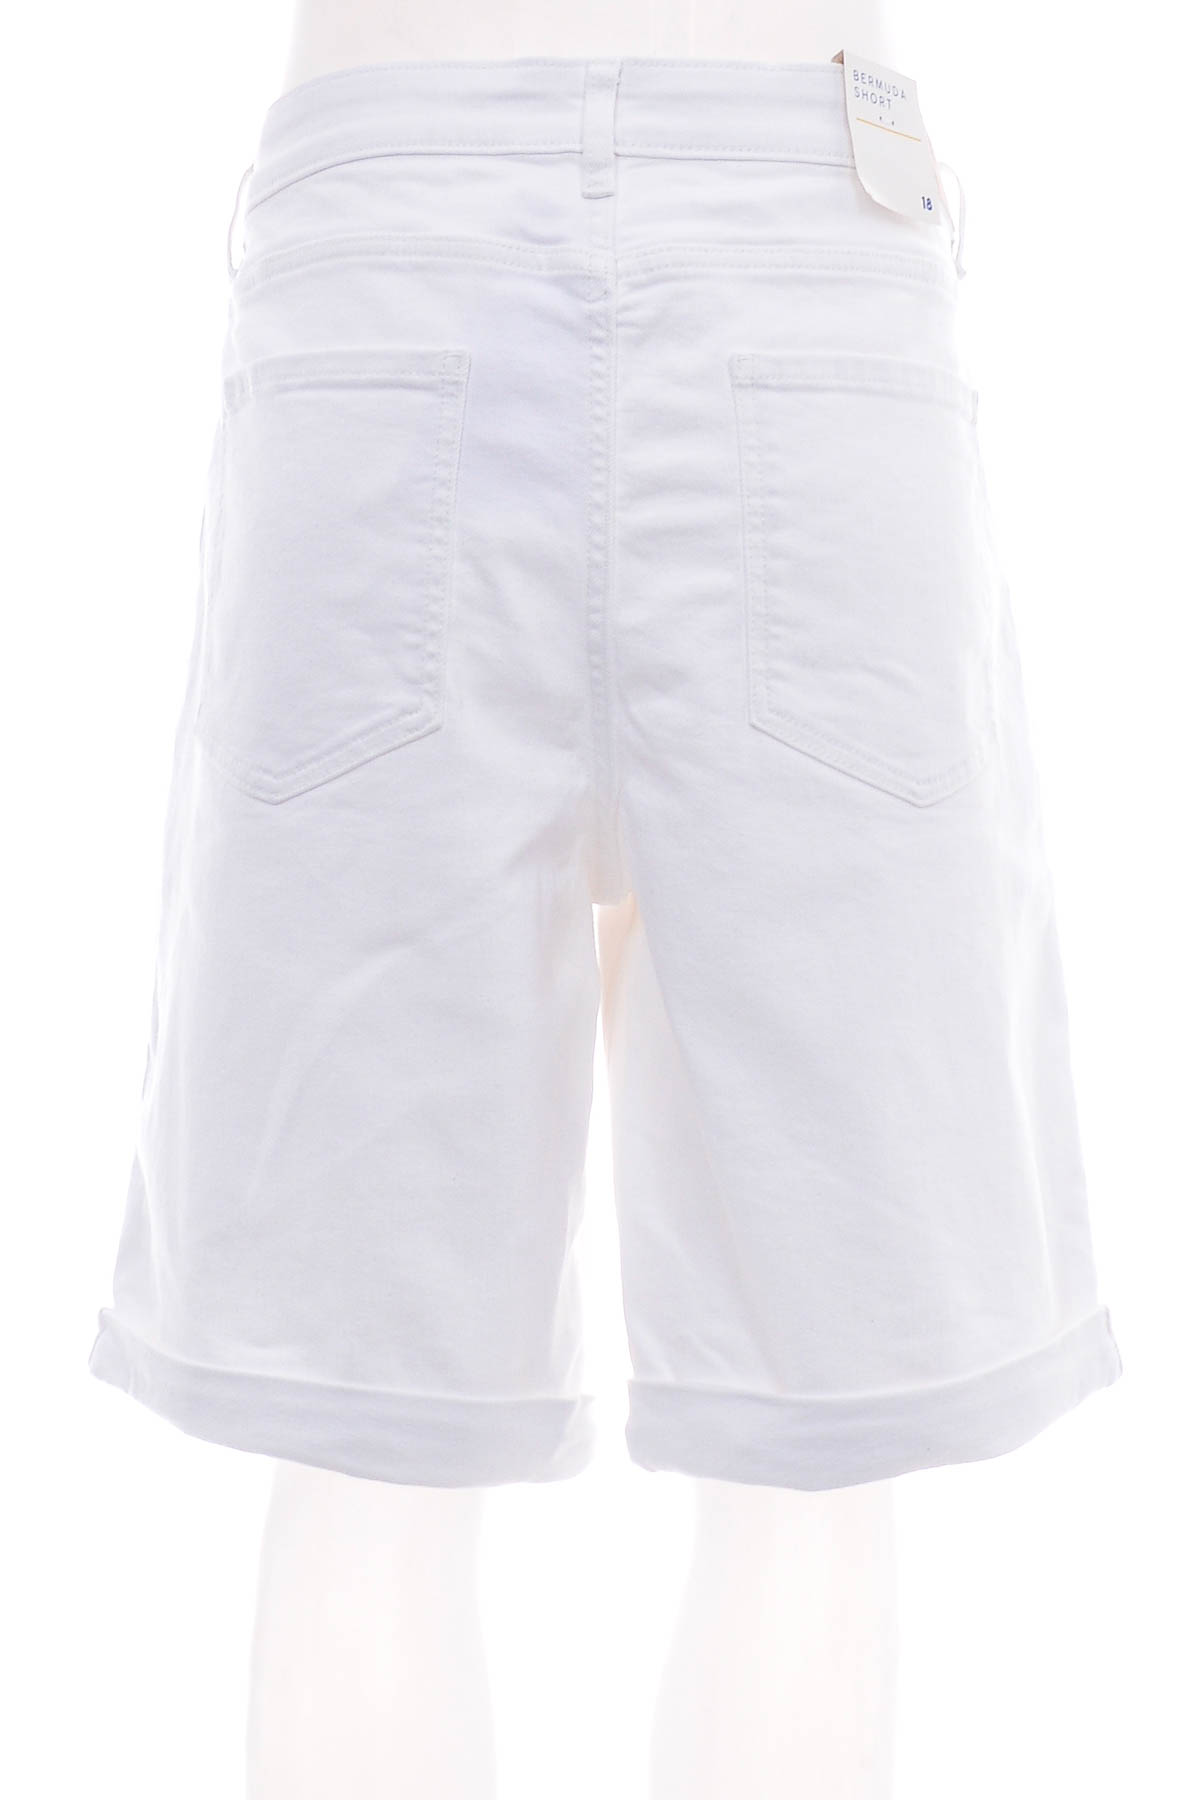 Female shorts - Target DENIM - 1